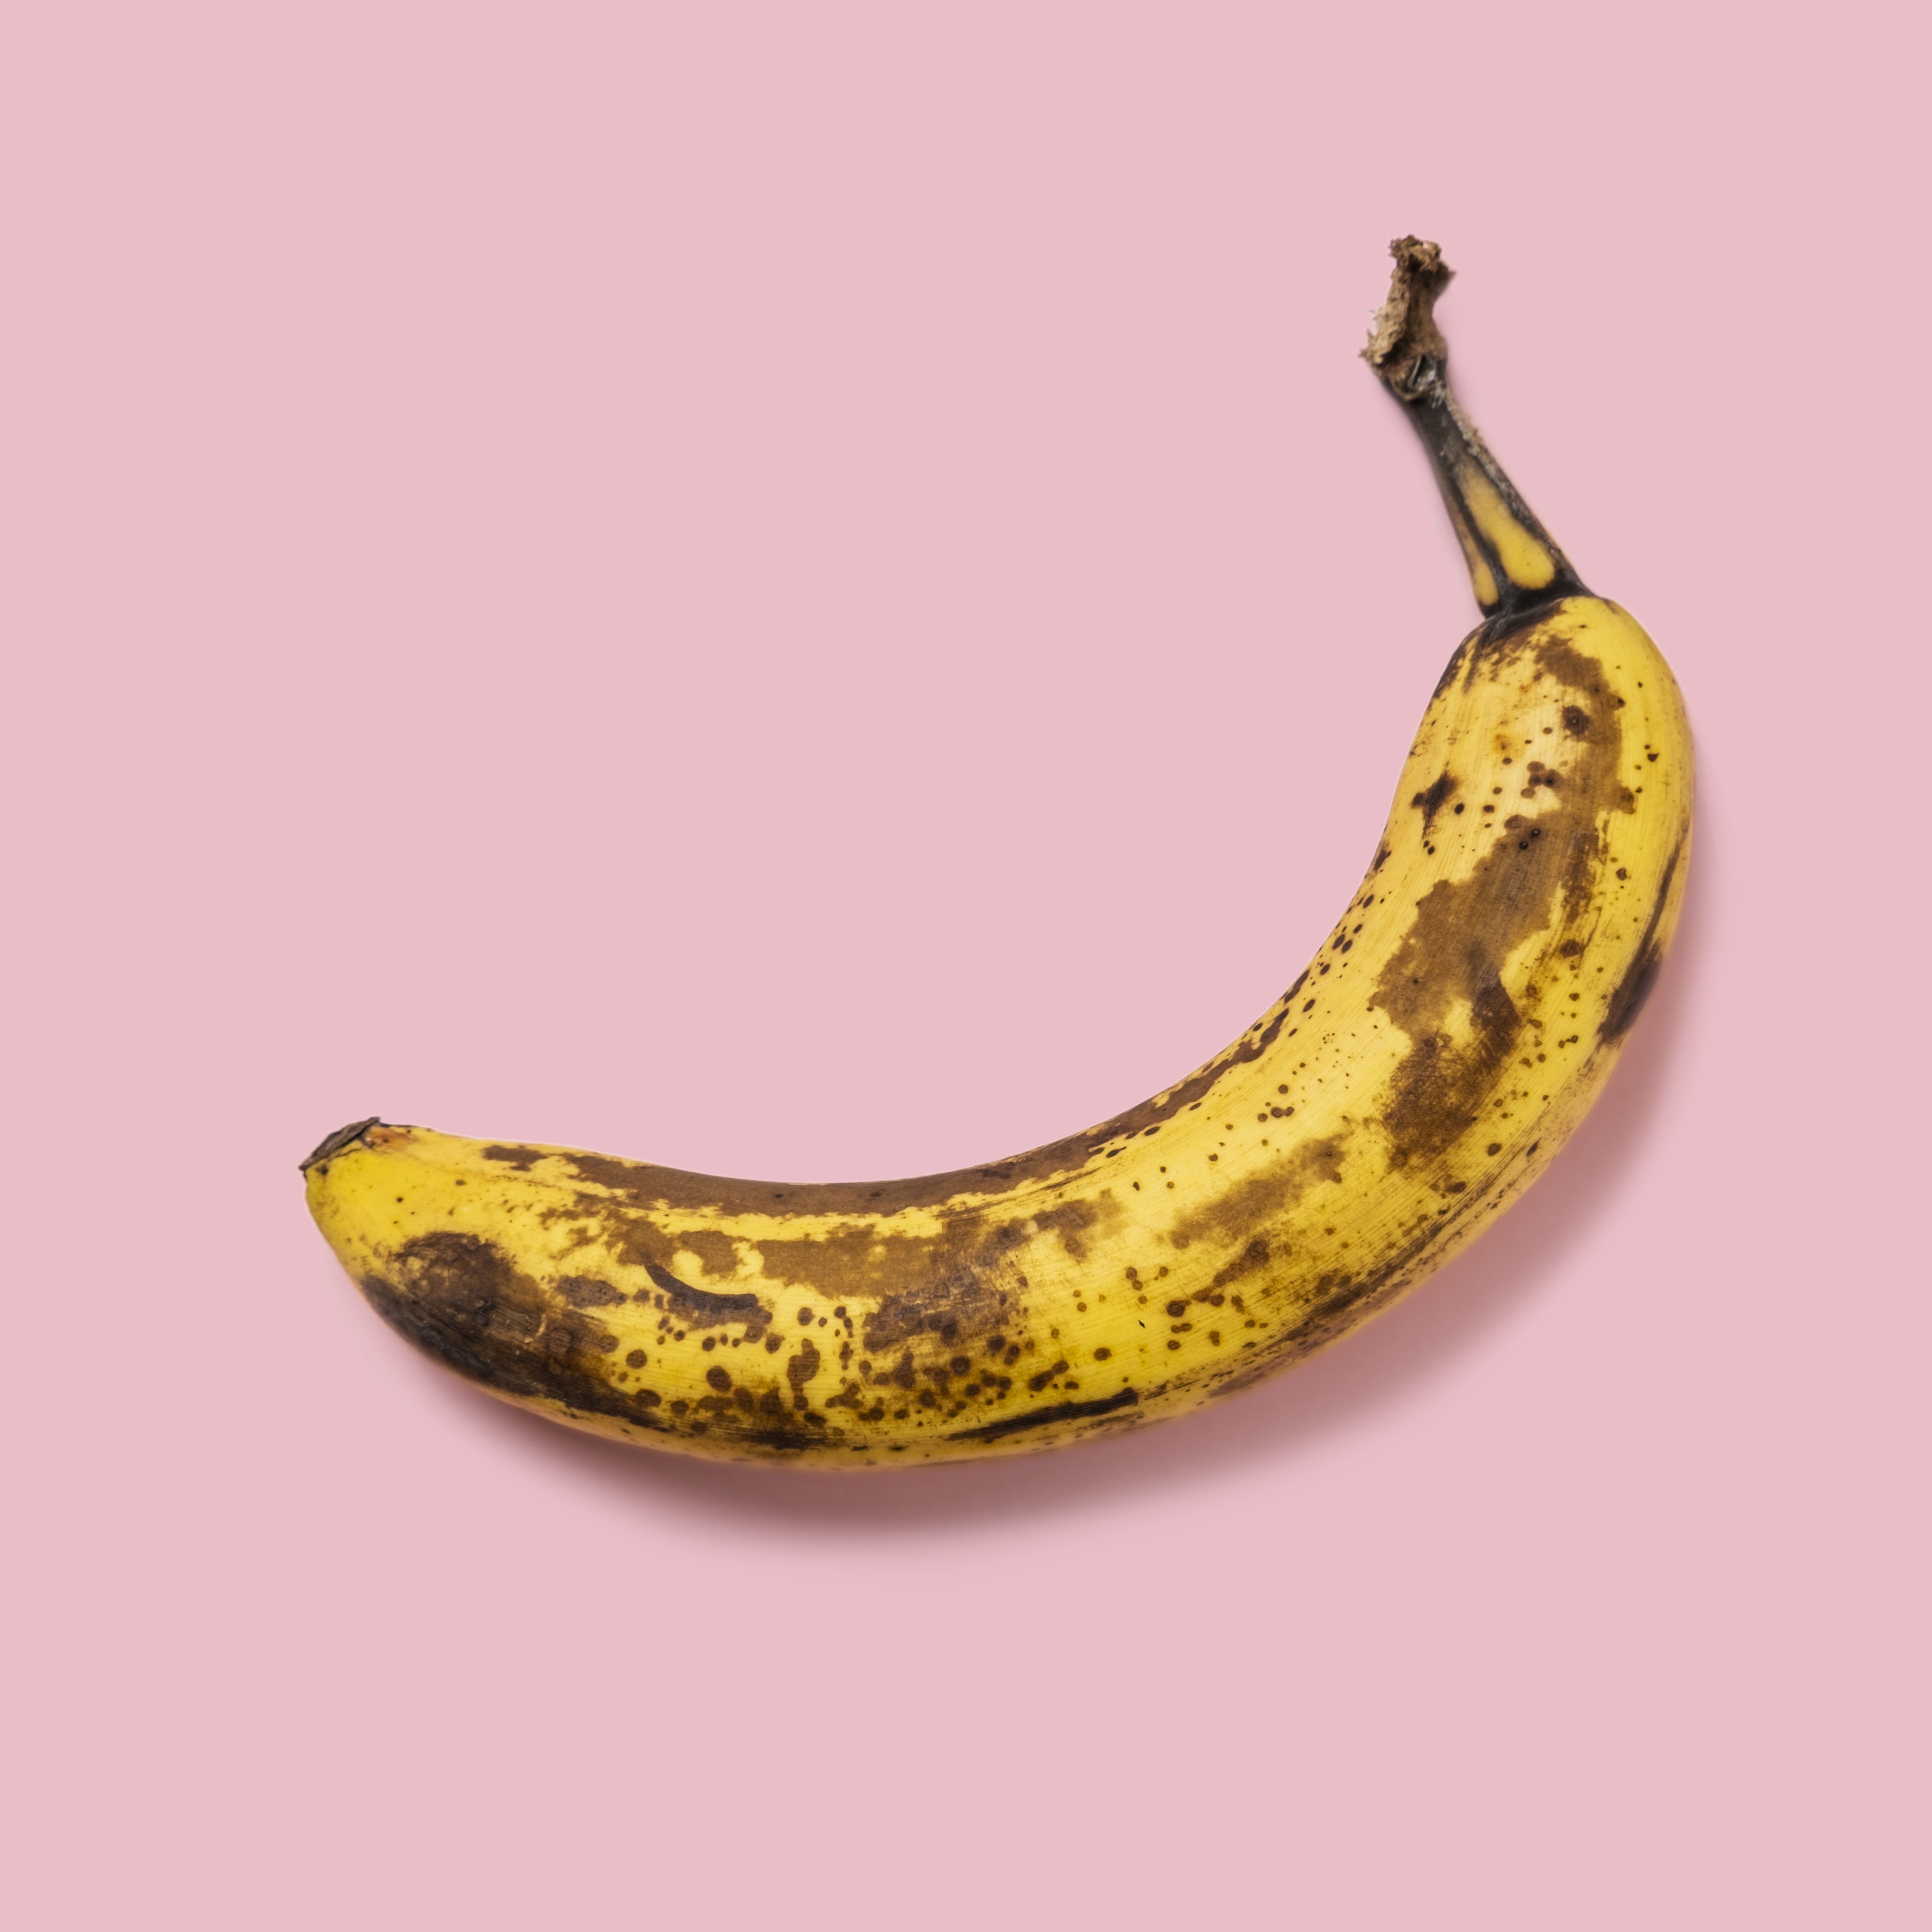 バナナは茶色くても食べれる 変色を防ぐ方法もご紹介